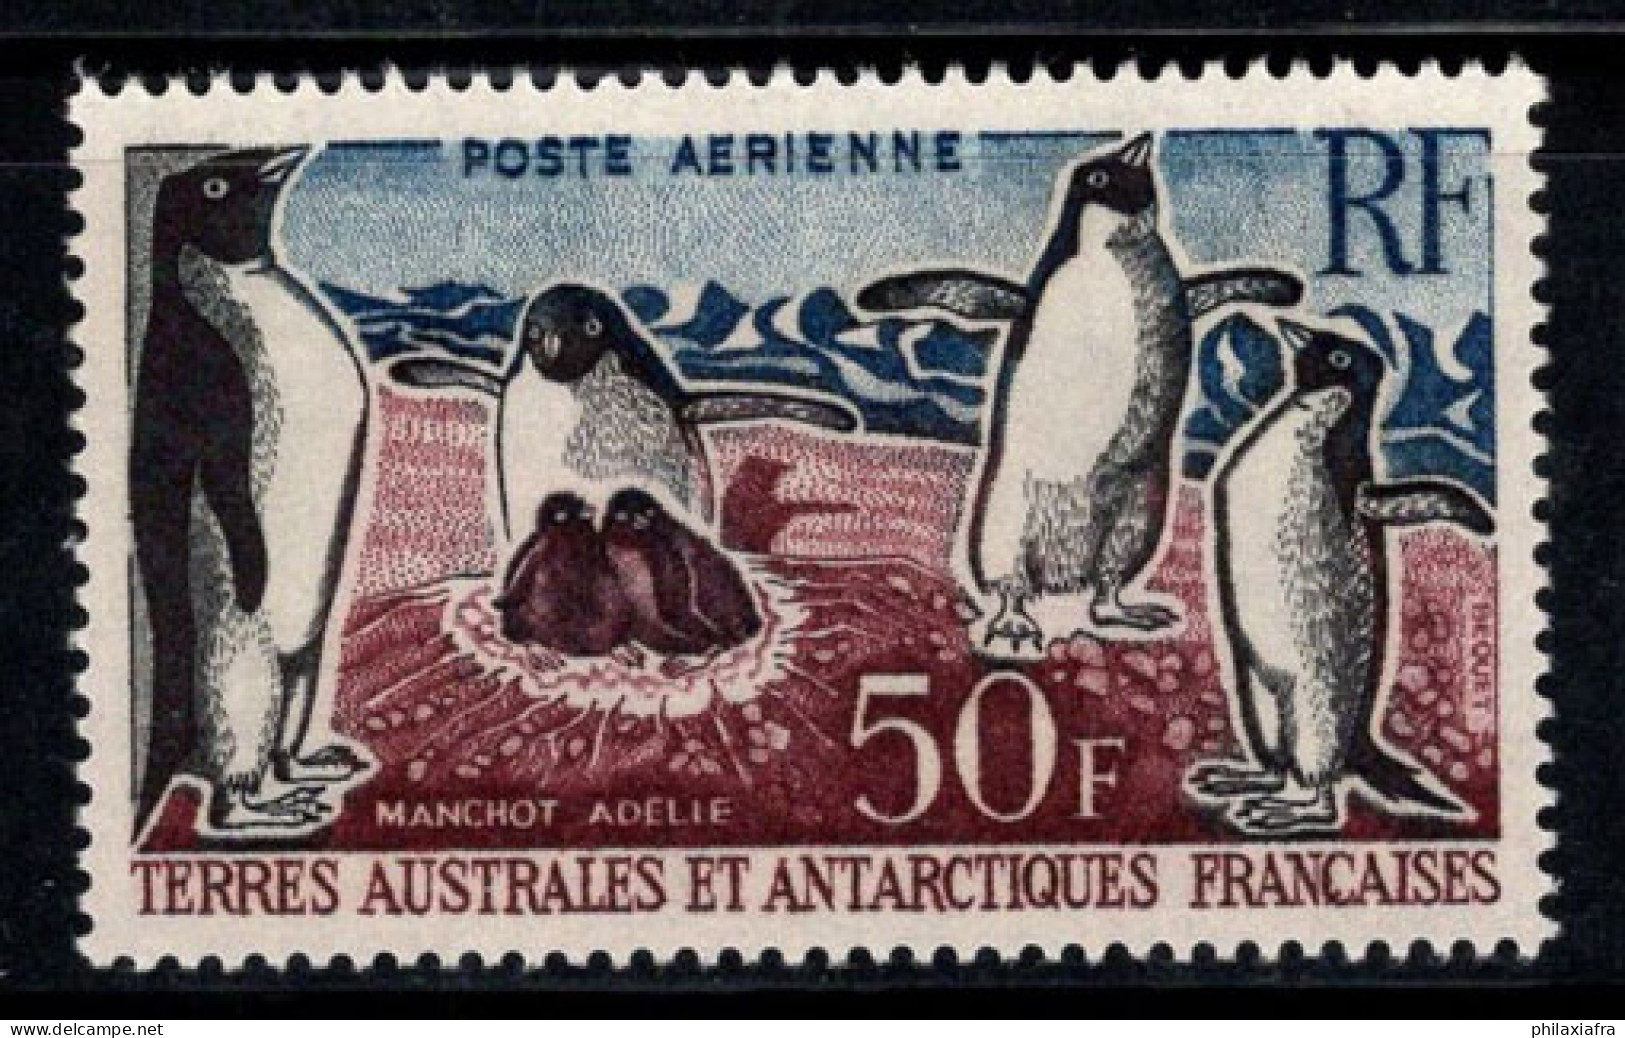 Territoire Antarctique Français TAAF 1962 Mi. 26 Neuf ** 100% Poste Aérienne 50 Fr, Manchots Adélie - Nuovi